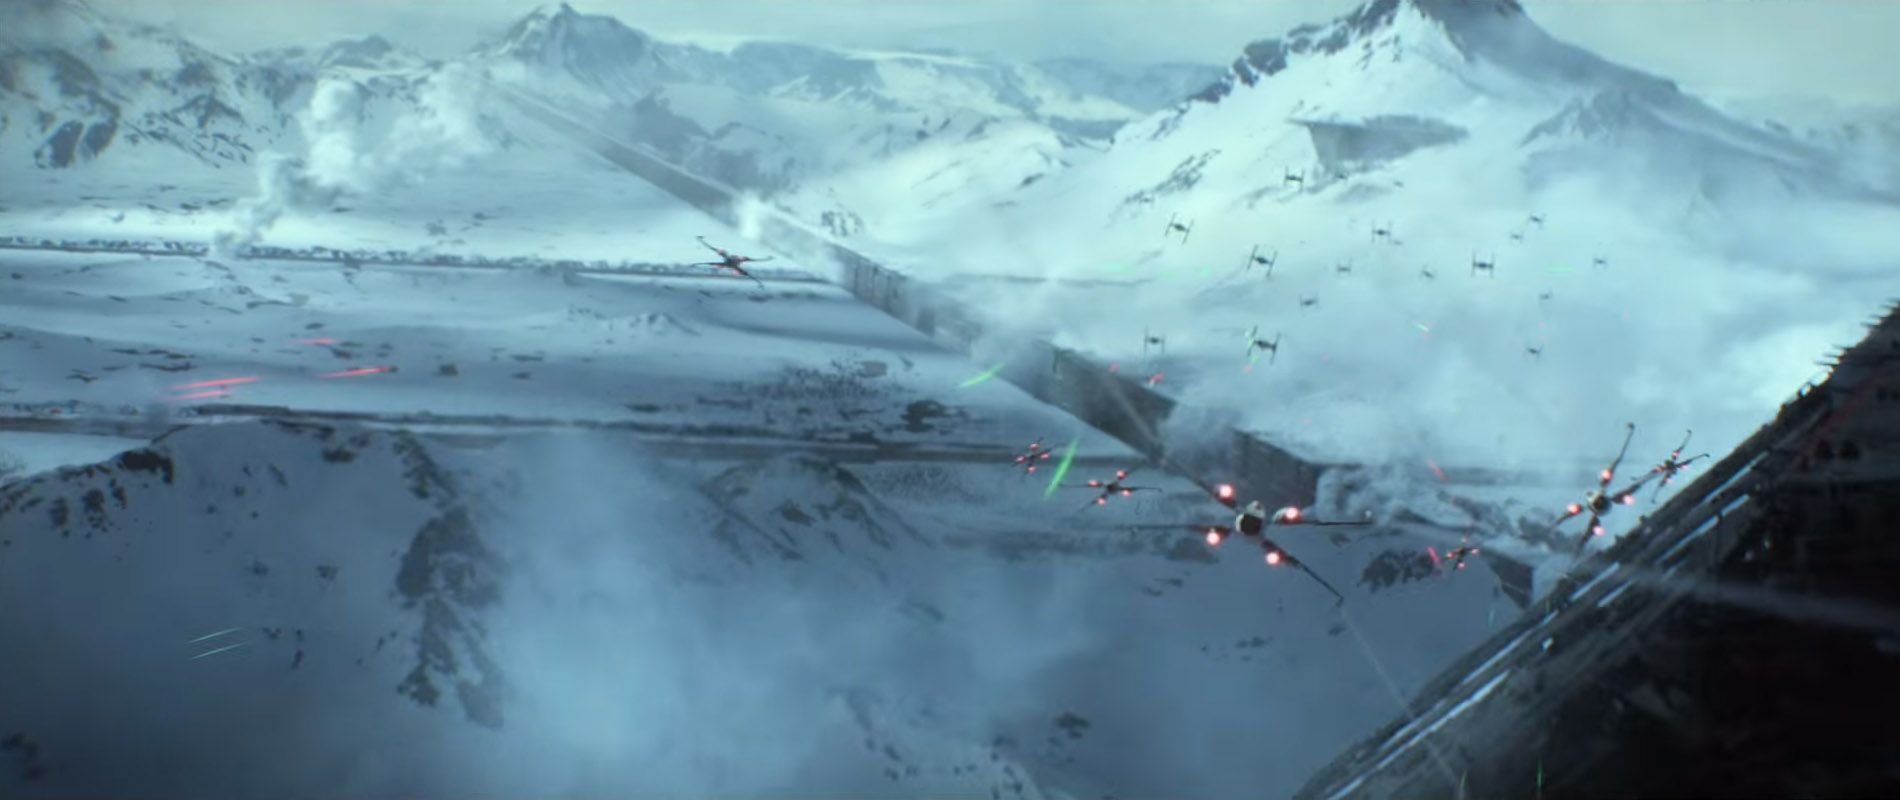 Star Wars 7 Trailer #3 - Starkiller Ice Planet